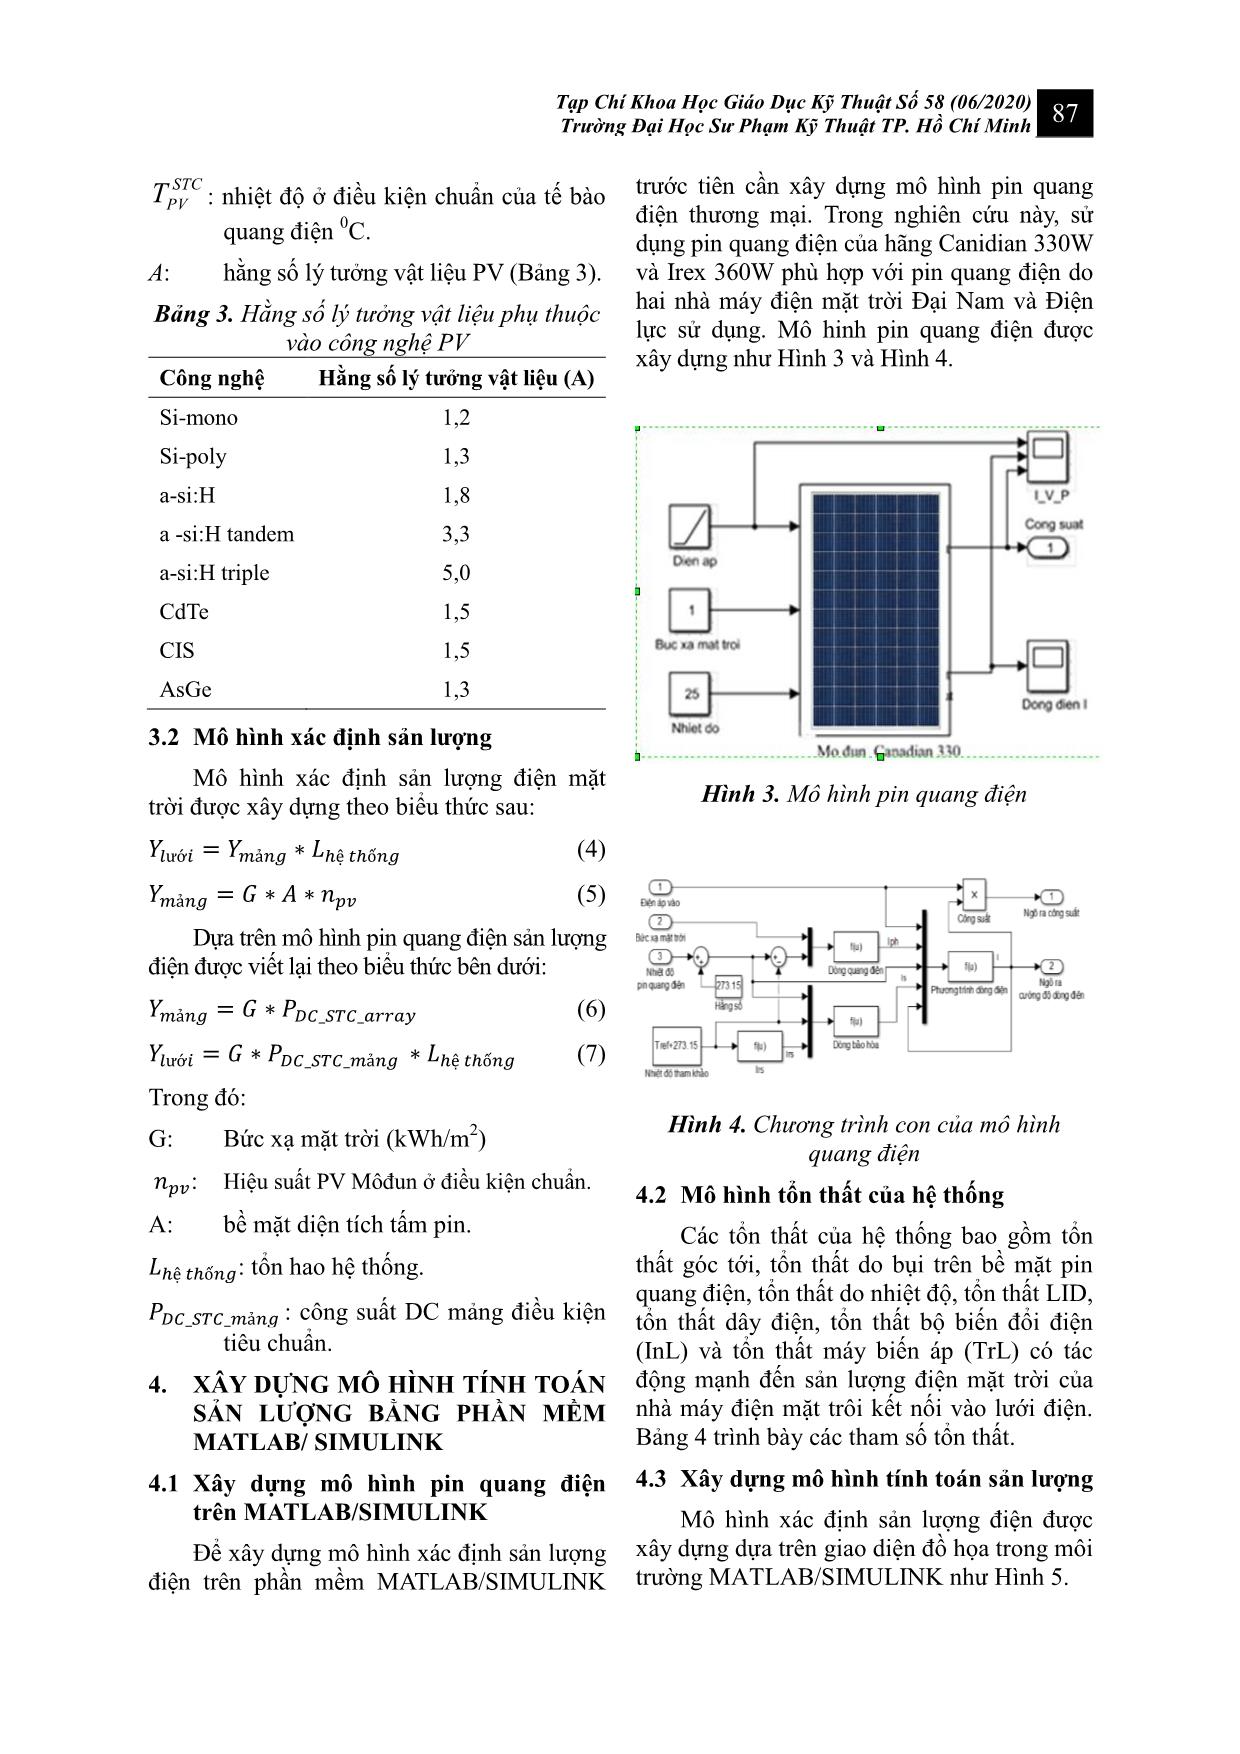 Xây dựng mô hình xác định sản lượng điện mặt trời trên mái nối lưới dựa trên môi trường Matlab/Simulink trang 4